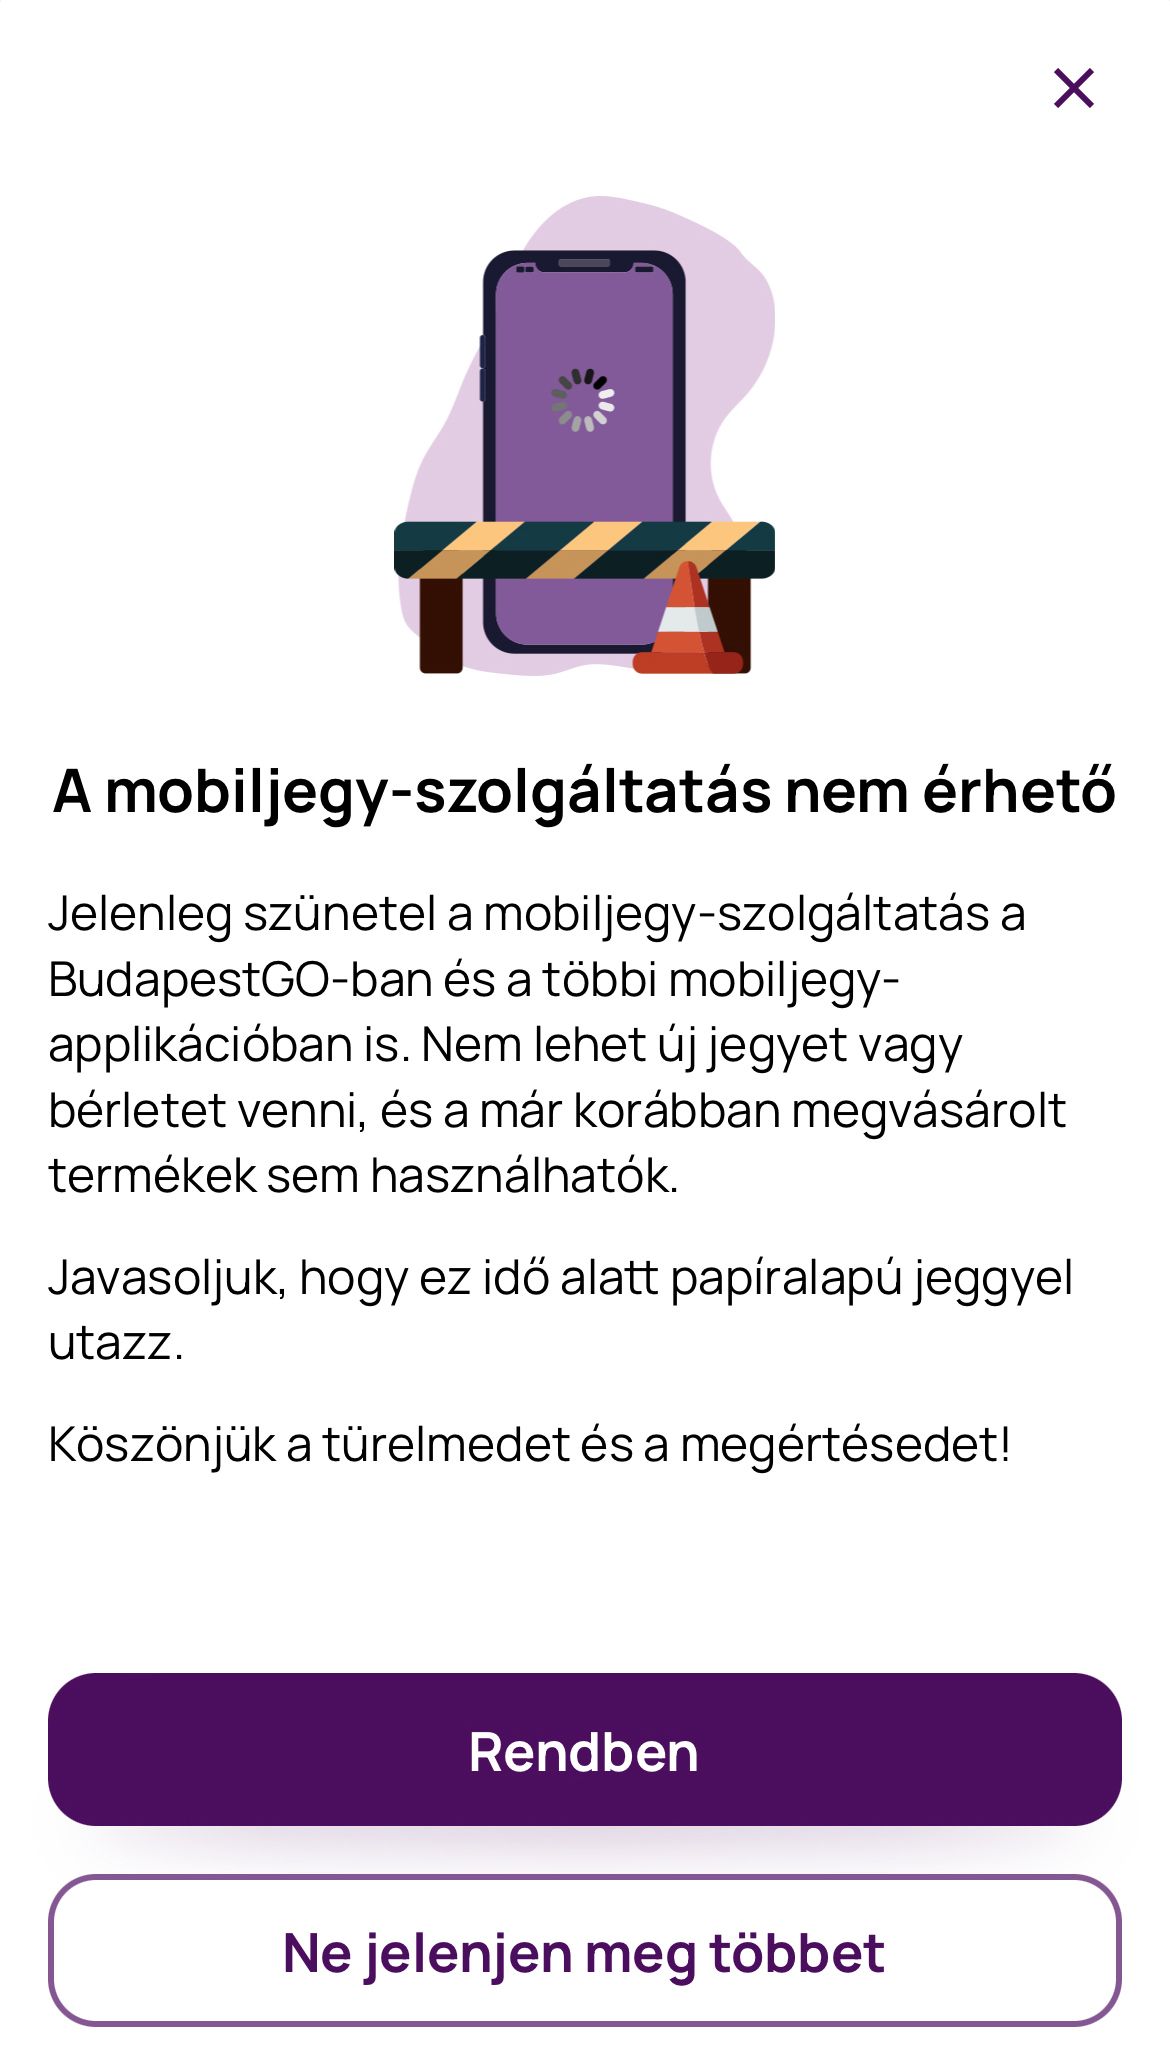 VG
saját fotó
BudapestGO, nem, működik, 2023.12.11.